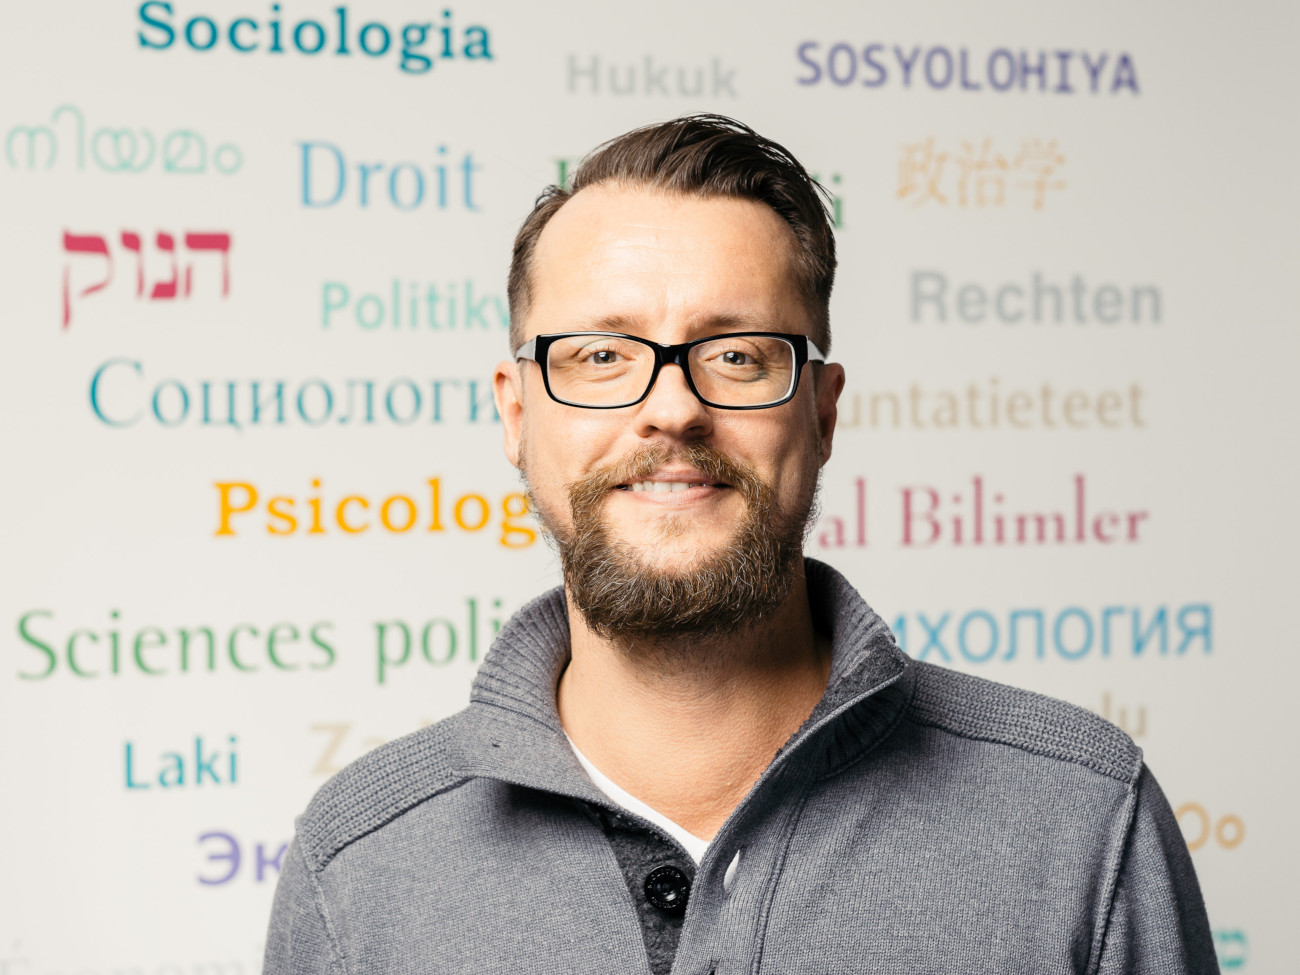 Christian Peters steht vor eine Wand mit bunten Schriftzügen aus dem Themenbereich Sozialwissenschaften in unterschiedlichen Sprachen.